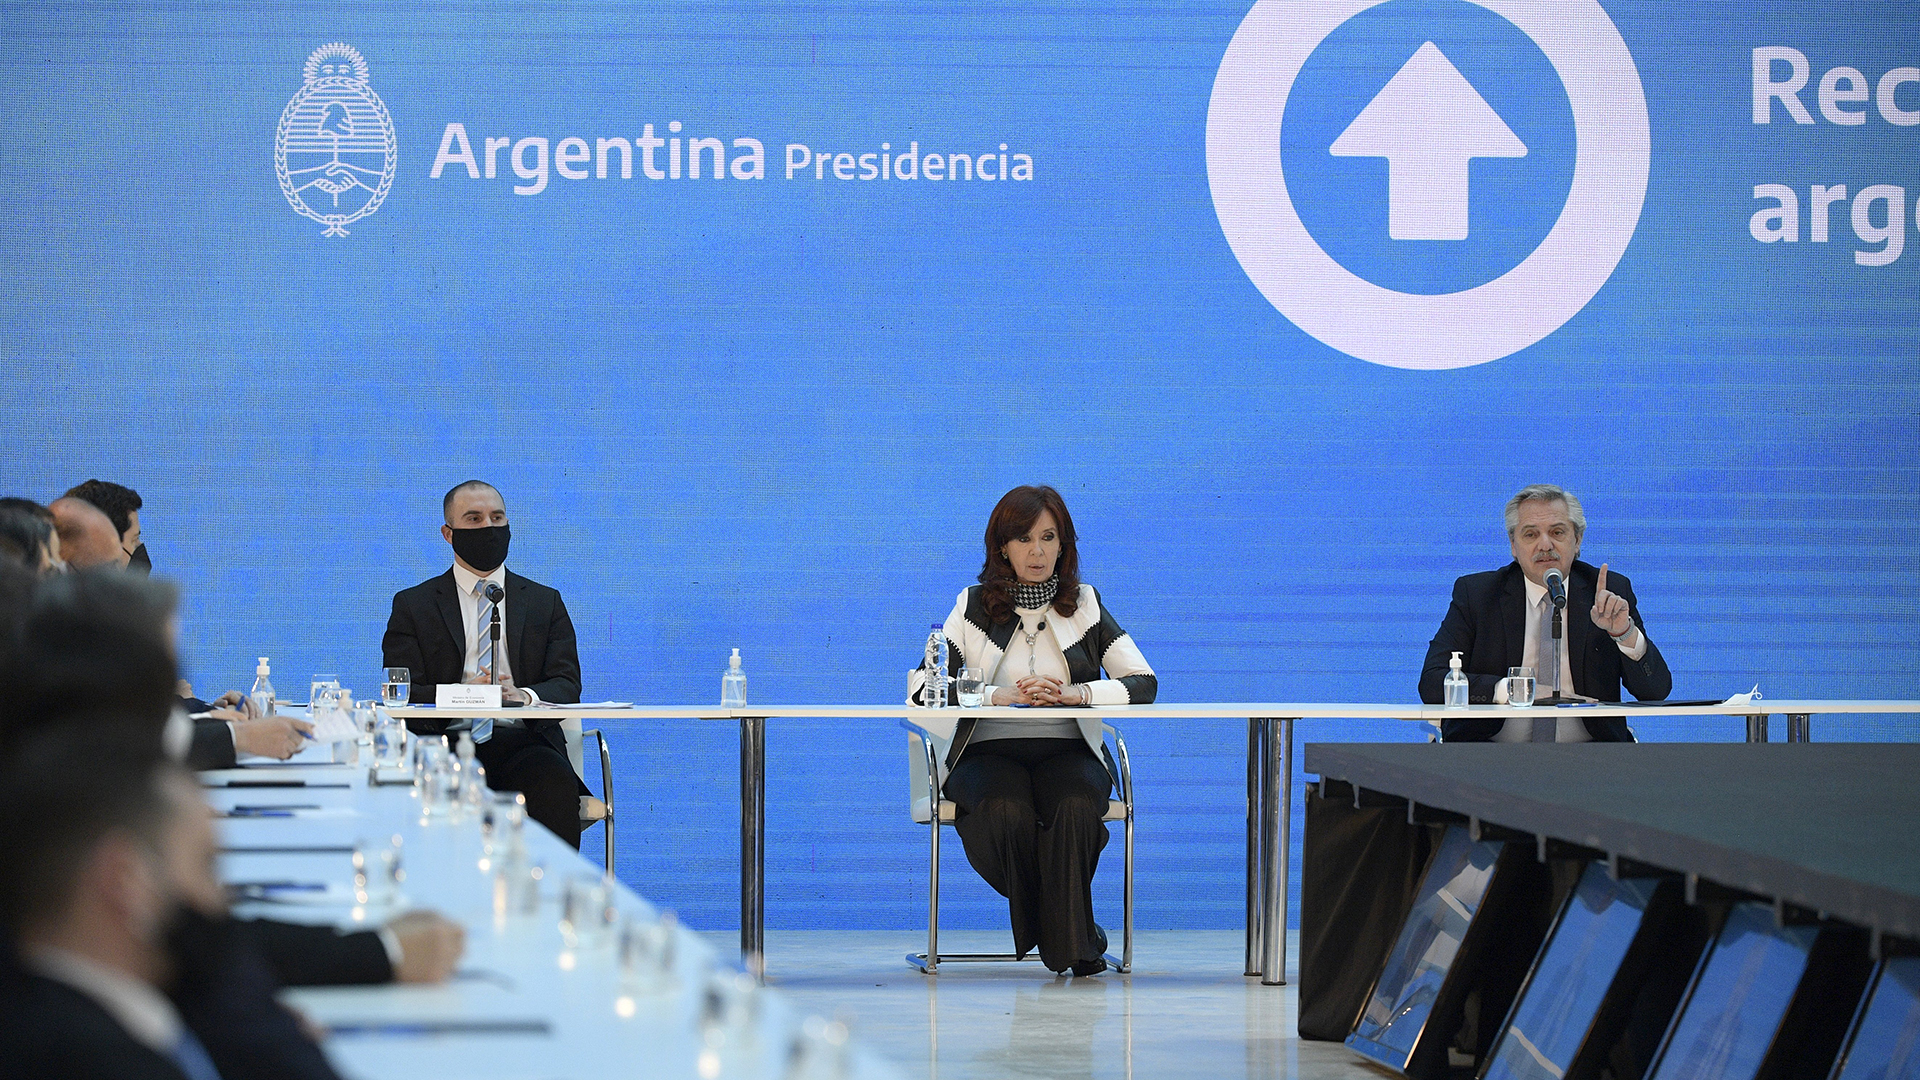 Alberto Fernández, Cristina Fernández de Kirchner y Martín Guzmán en el Museo del Bicentenario de la Casa Rosada